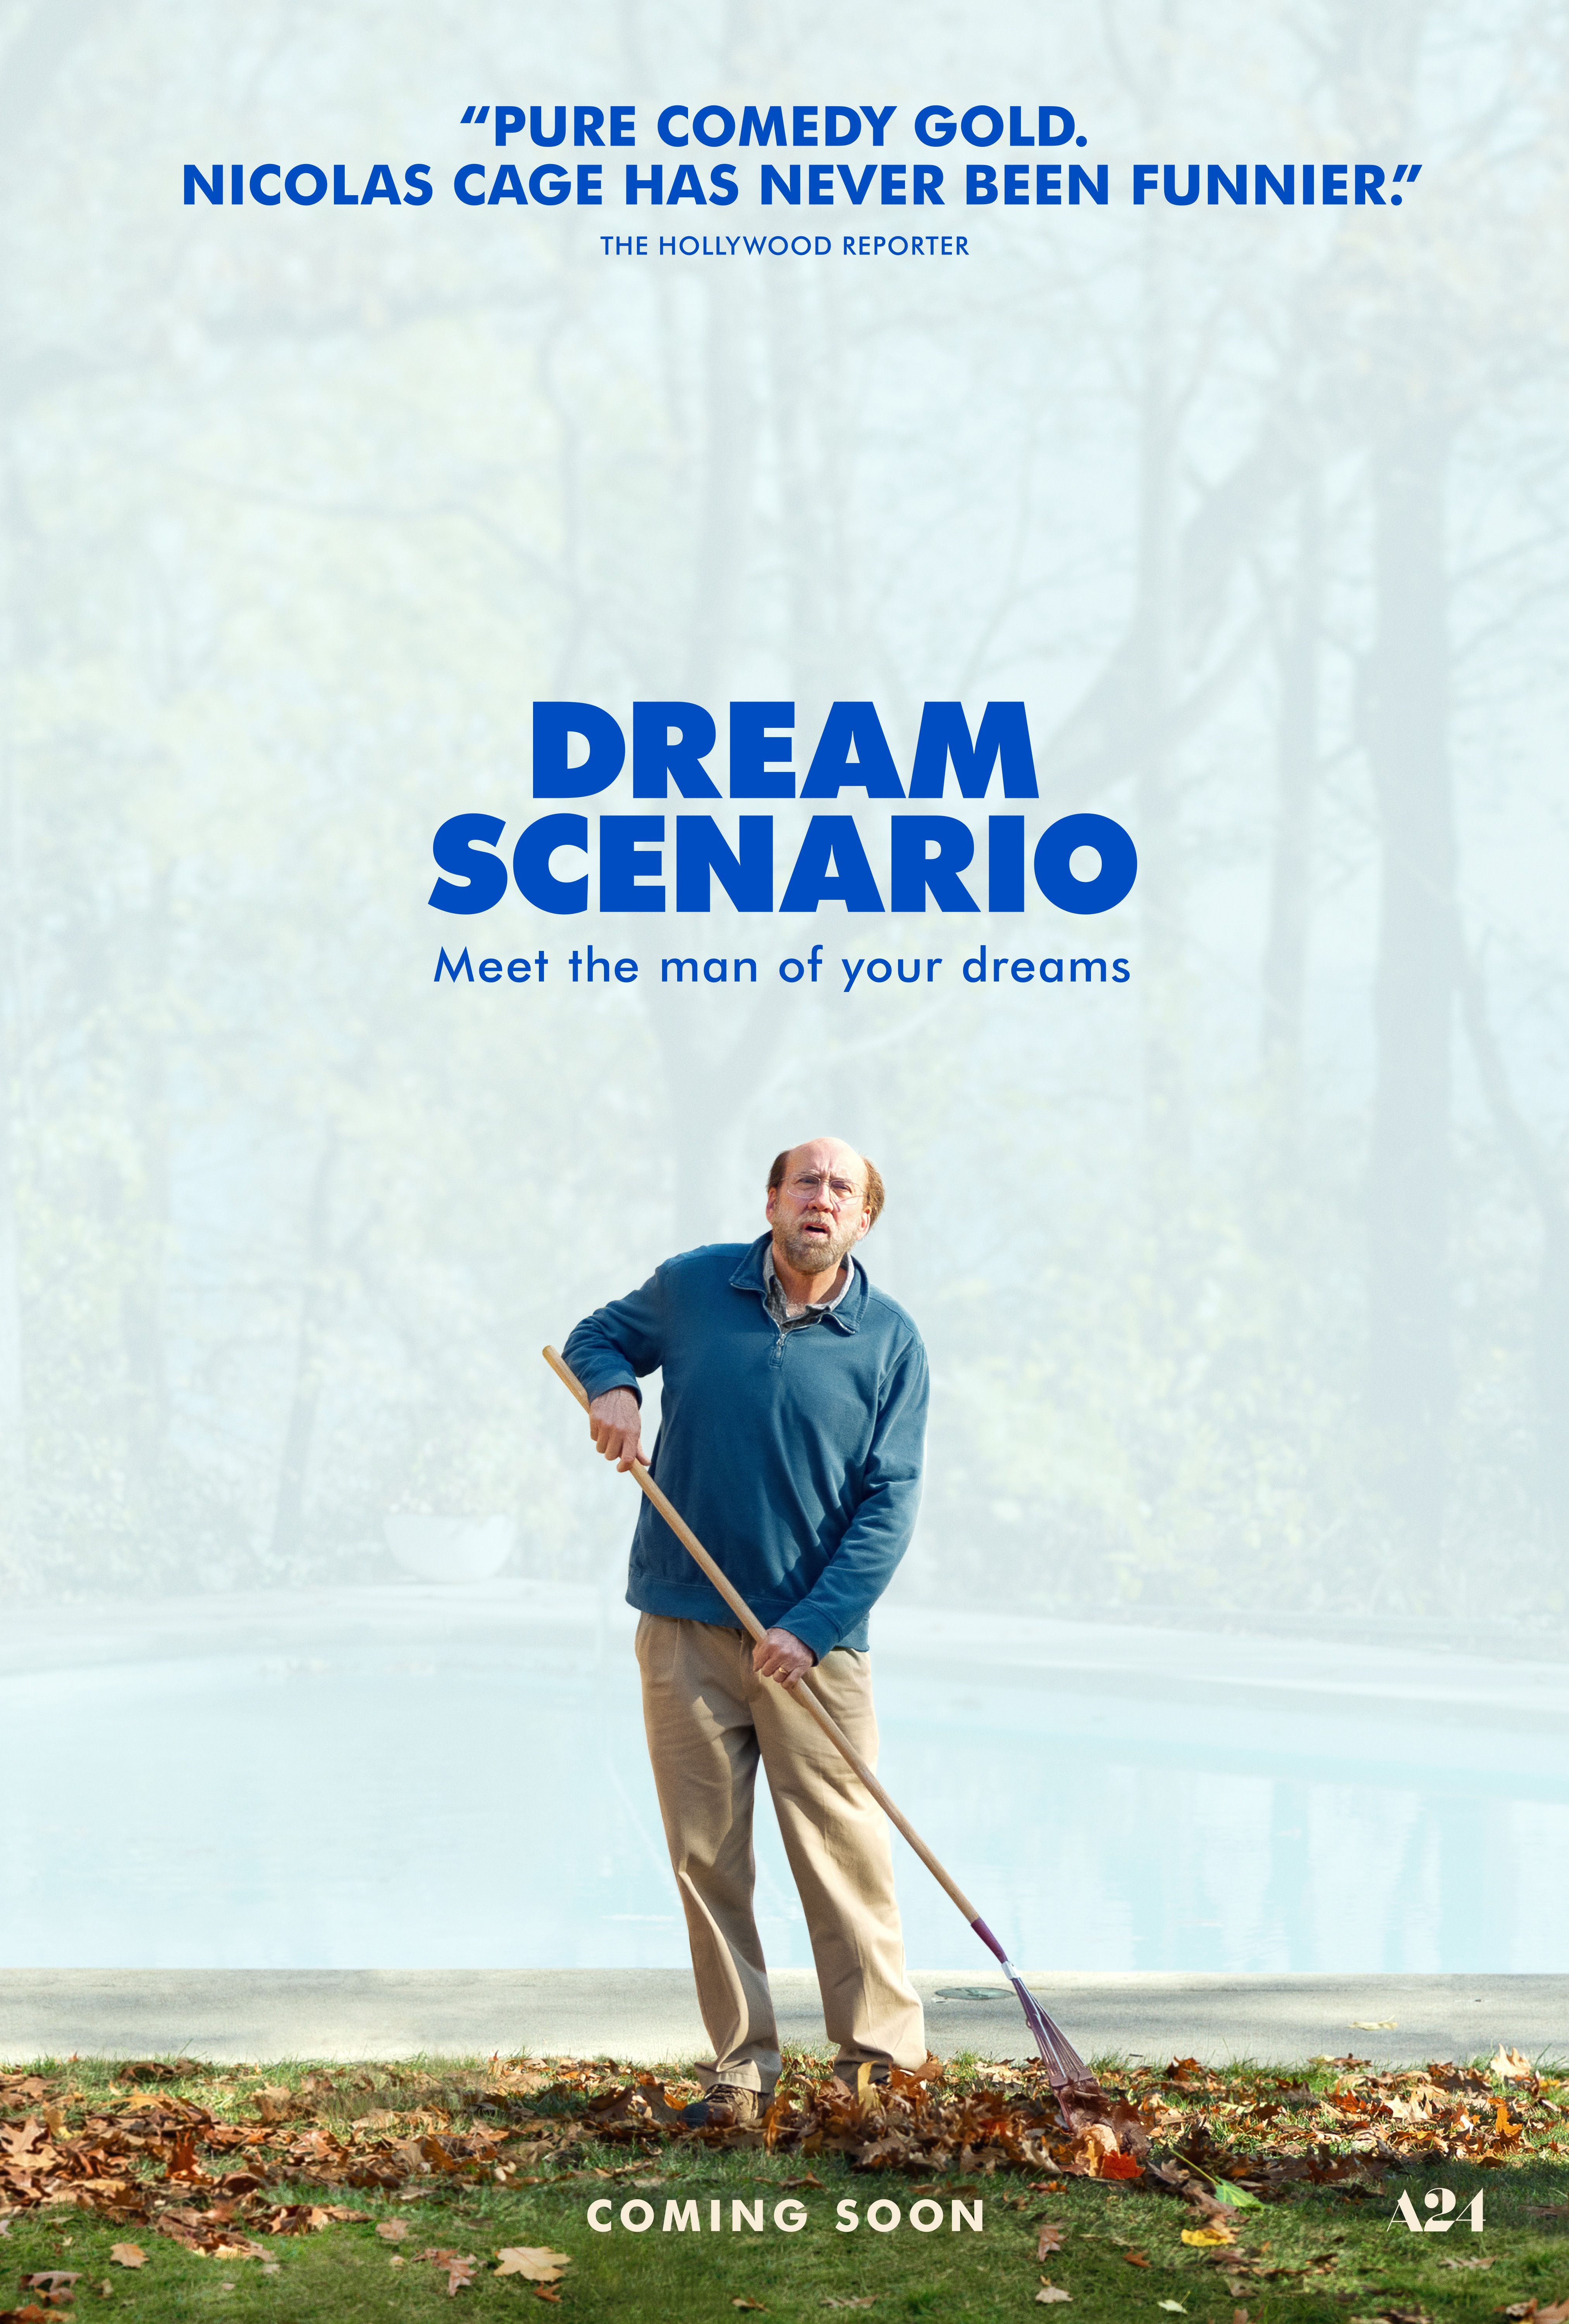 Nicolas Cage on the poster for Dream Scenario